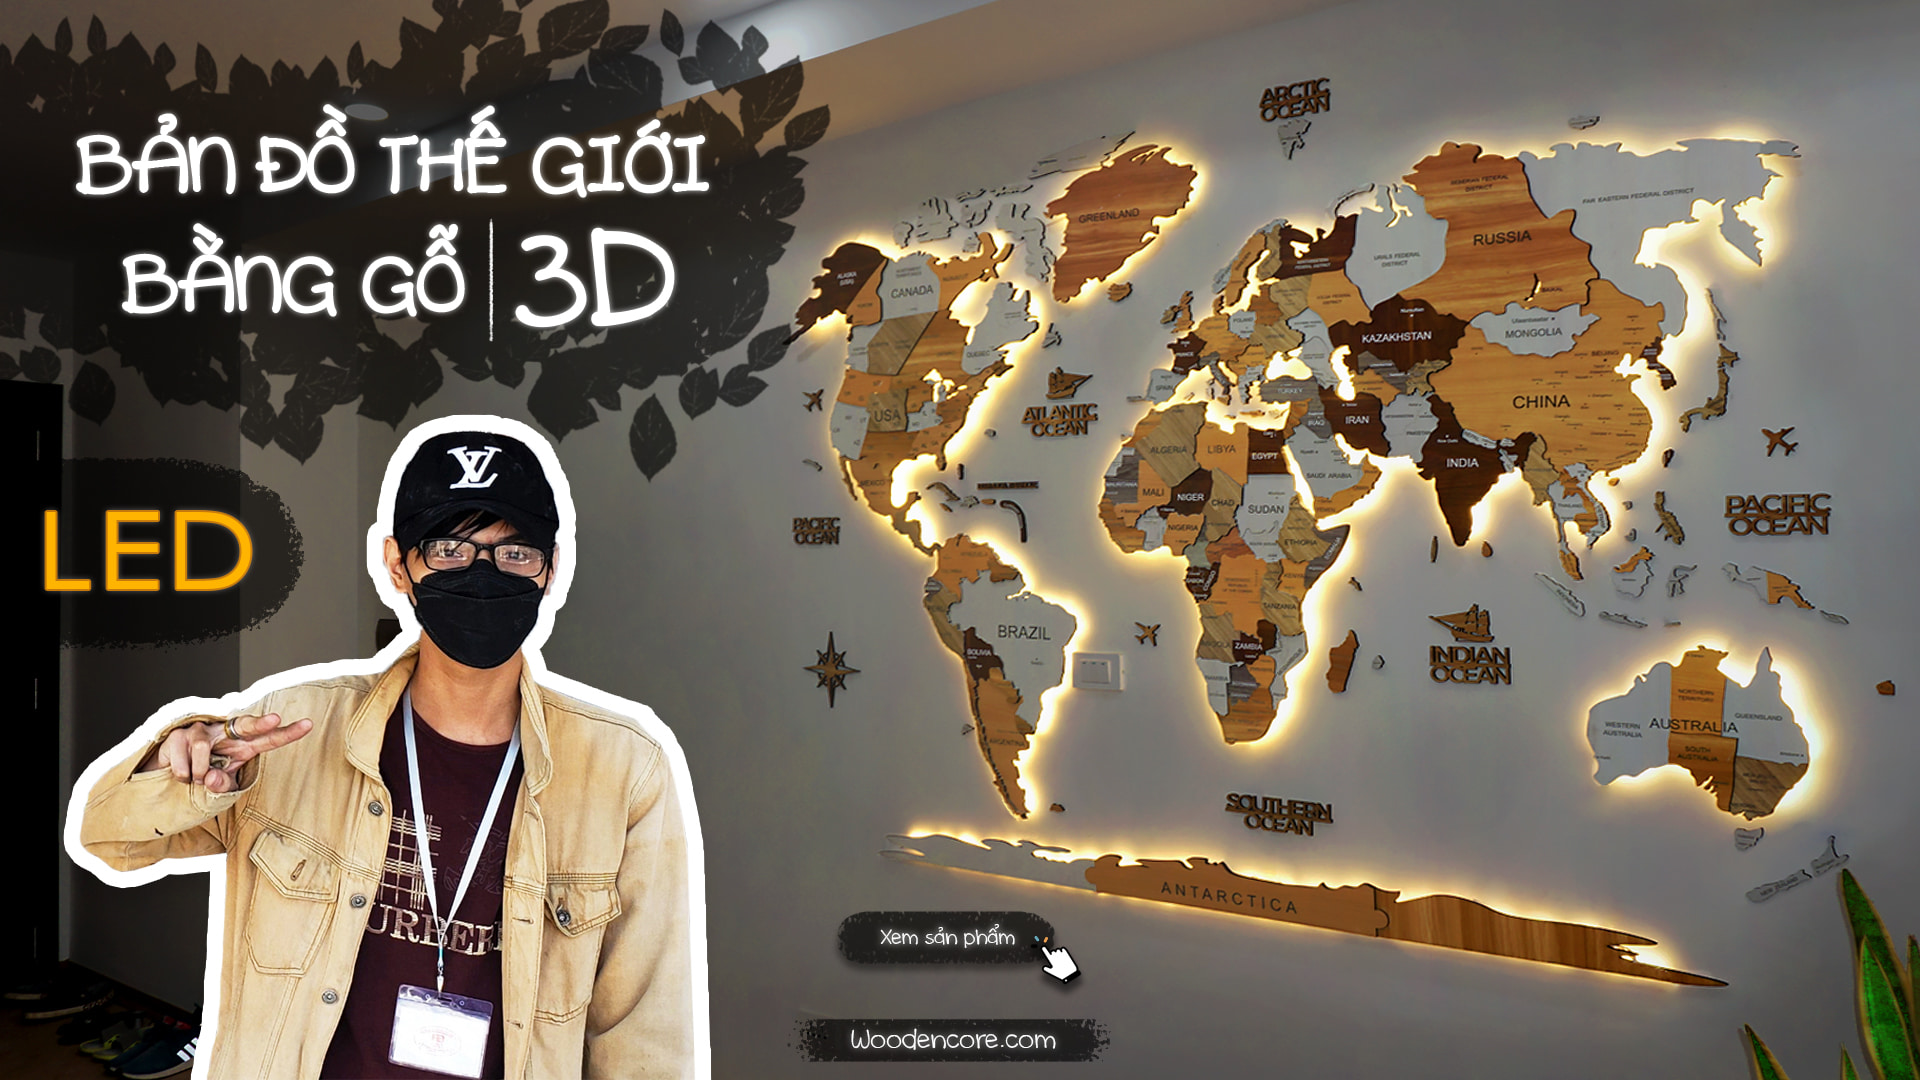 Với Bản đồ gỗ 3D thế giới và Việt Nam, bạn sẽ được khám phá những điểm đến nổi tiếng của thế giới và đặc biệt là Việt Nam một cách hoàn toàn mới. Công nghệ gỗ 3D sẽ giúp bạn hoàn toàn sáng tạo với những điểm đến mà bạn đã từng mơ ước.